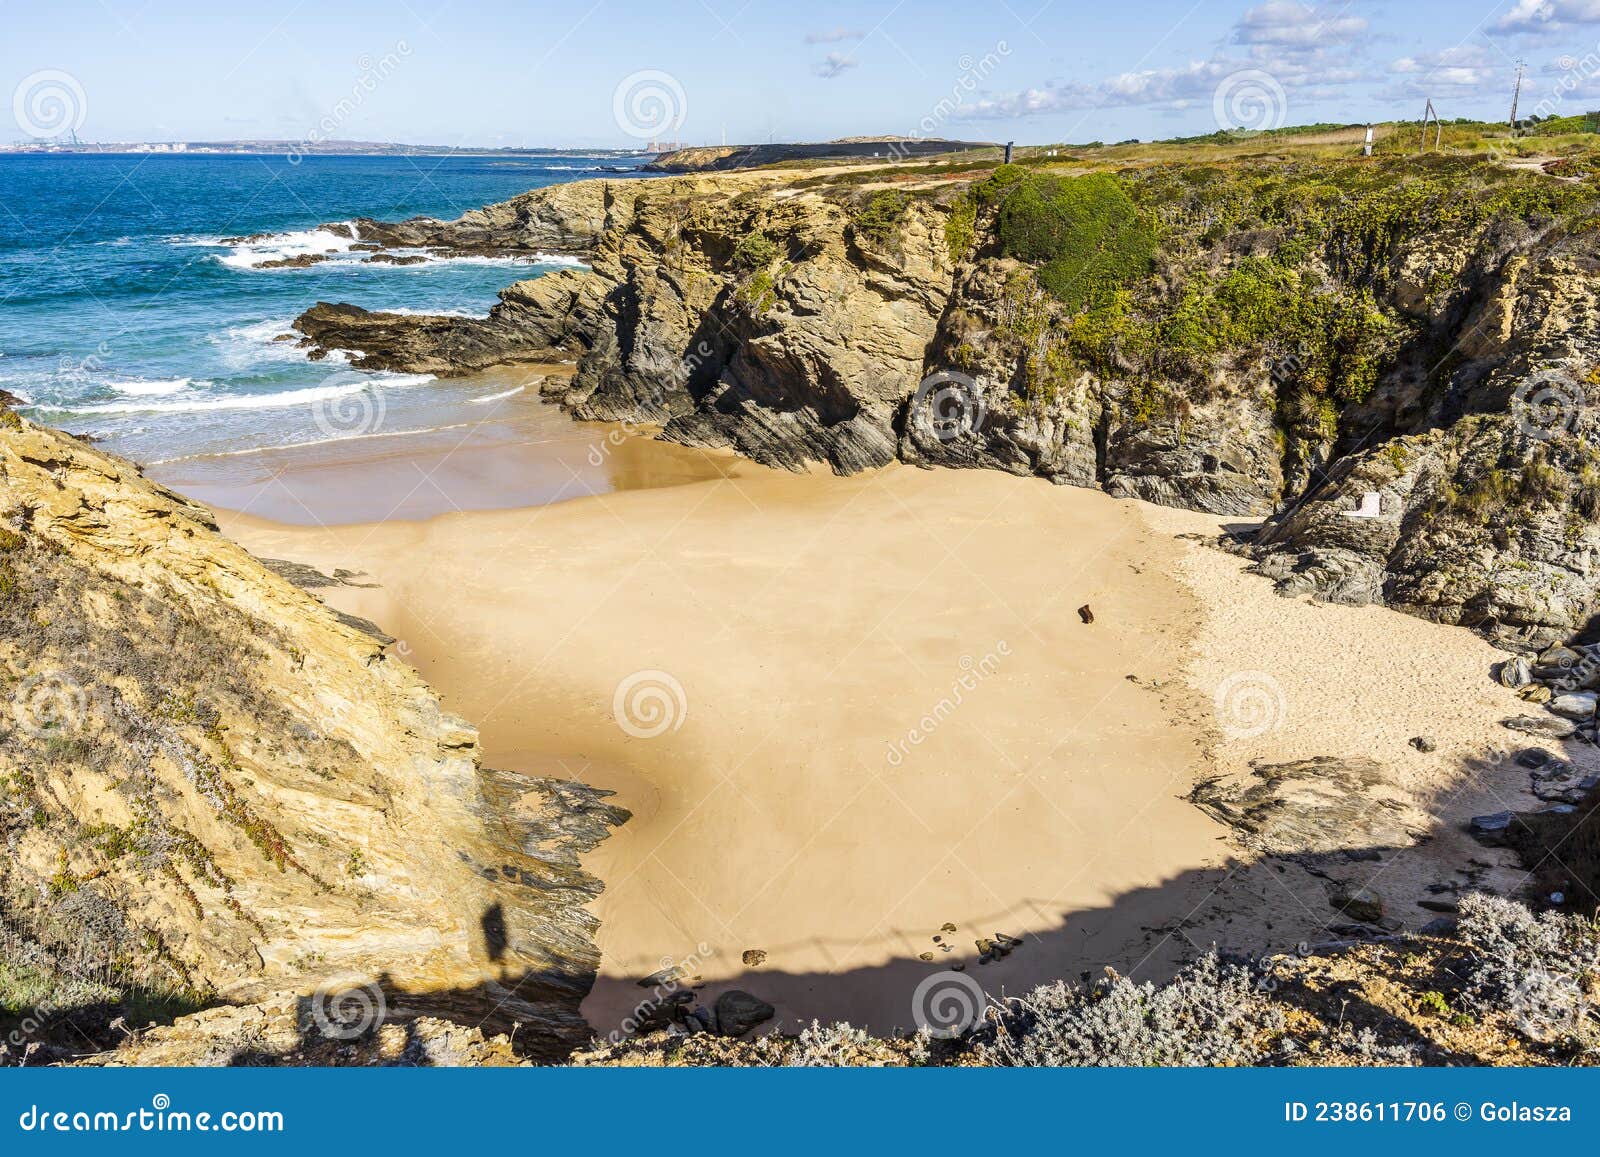 beautiful serro da aguia beach, vicentina coast, alentejo, portugal